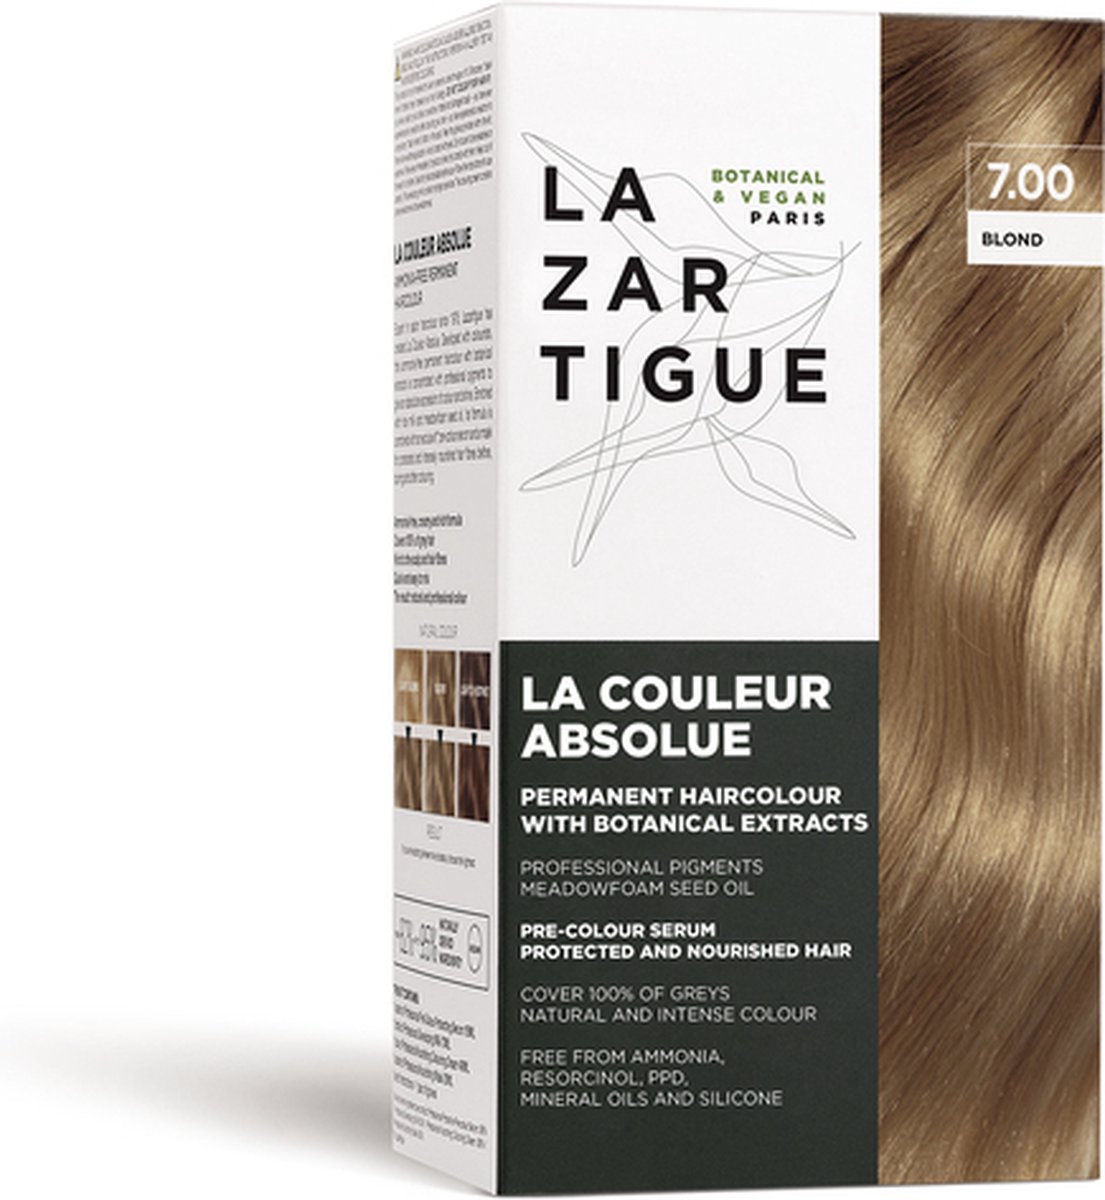 Lazartigue Pakket La Couleur Absolue Permanent Haircolour 7.00 Blond